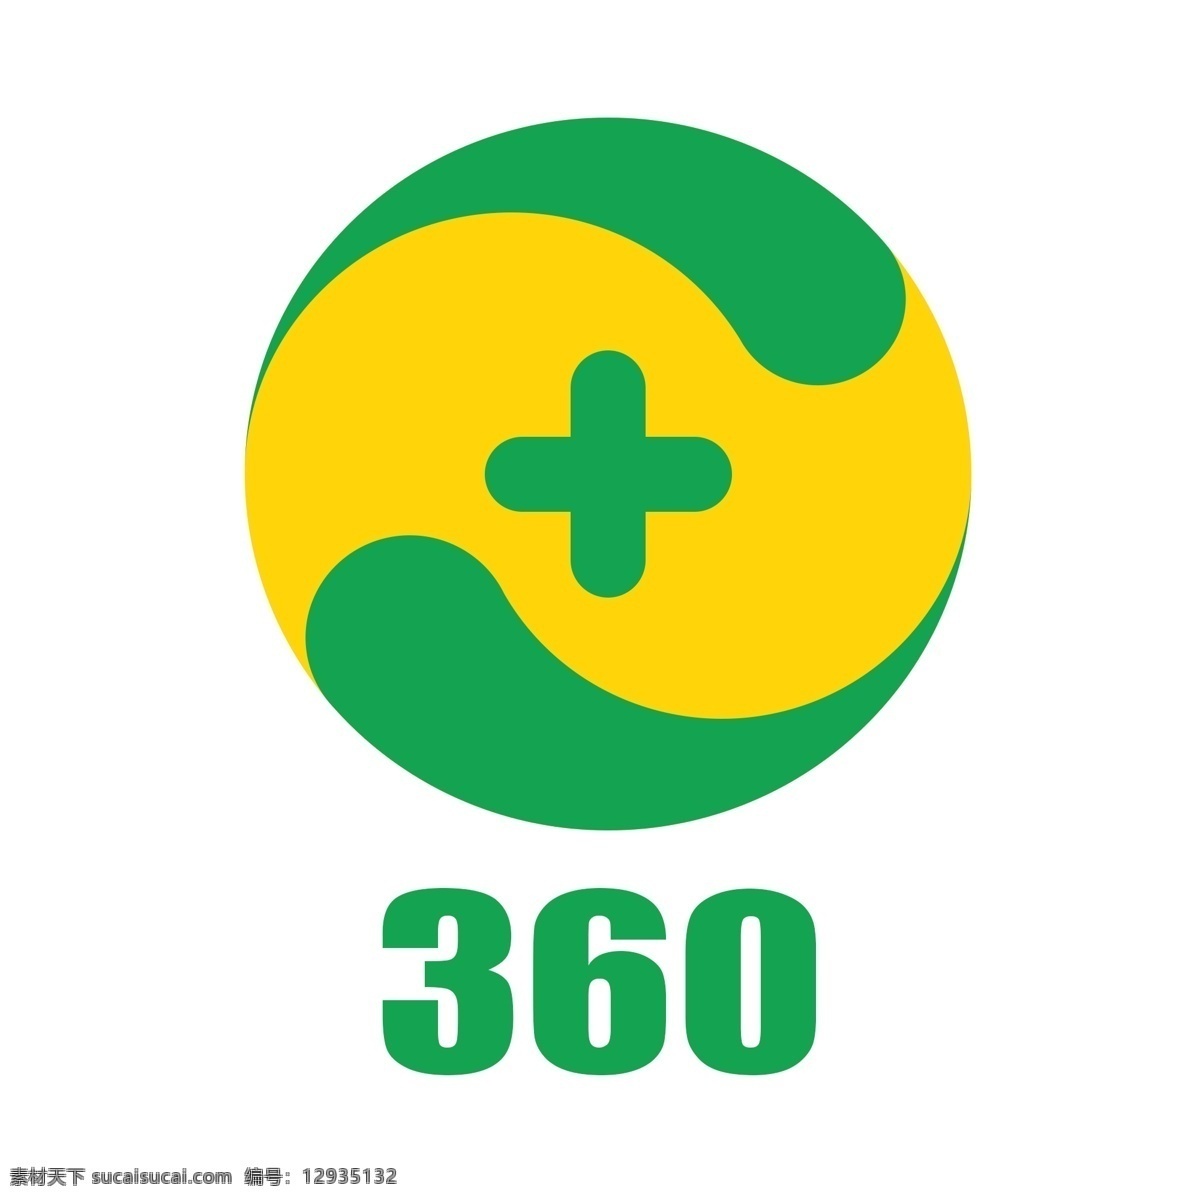 免费 网络安全 平台 logo 360公司 在线广告 游戏 互联网 增值业务 高品质 安全卫士 杀毒软件 浏览器